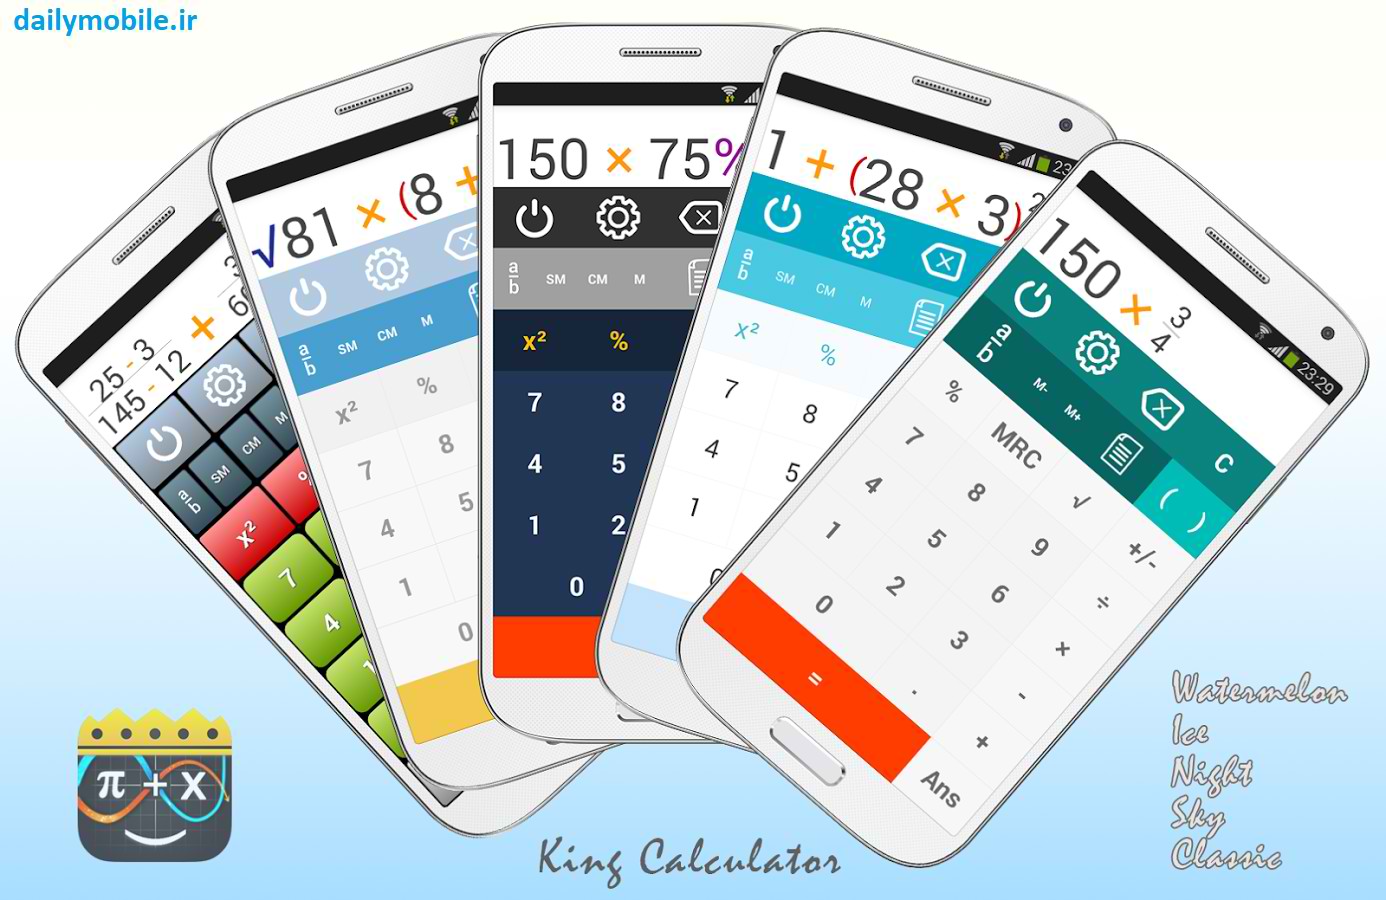 دانلود ماشین حساب برای اندروید King Calculator Premium